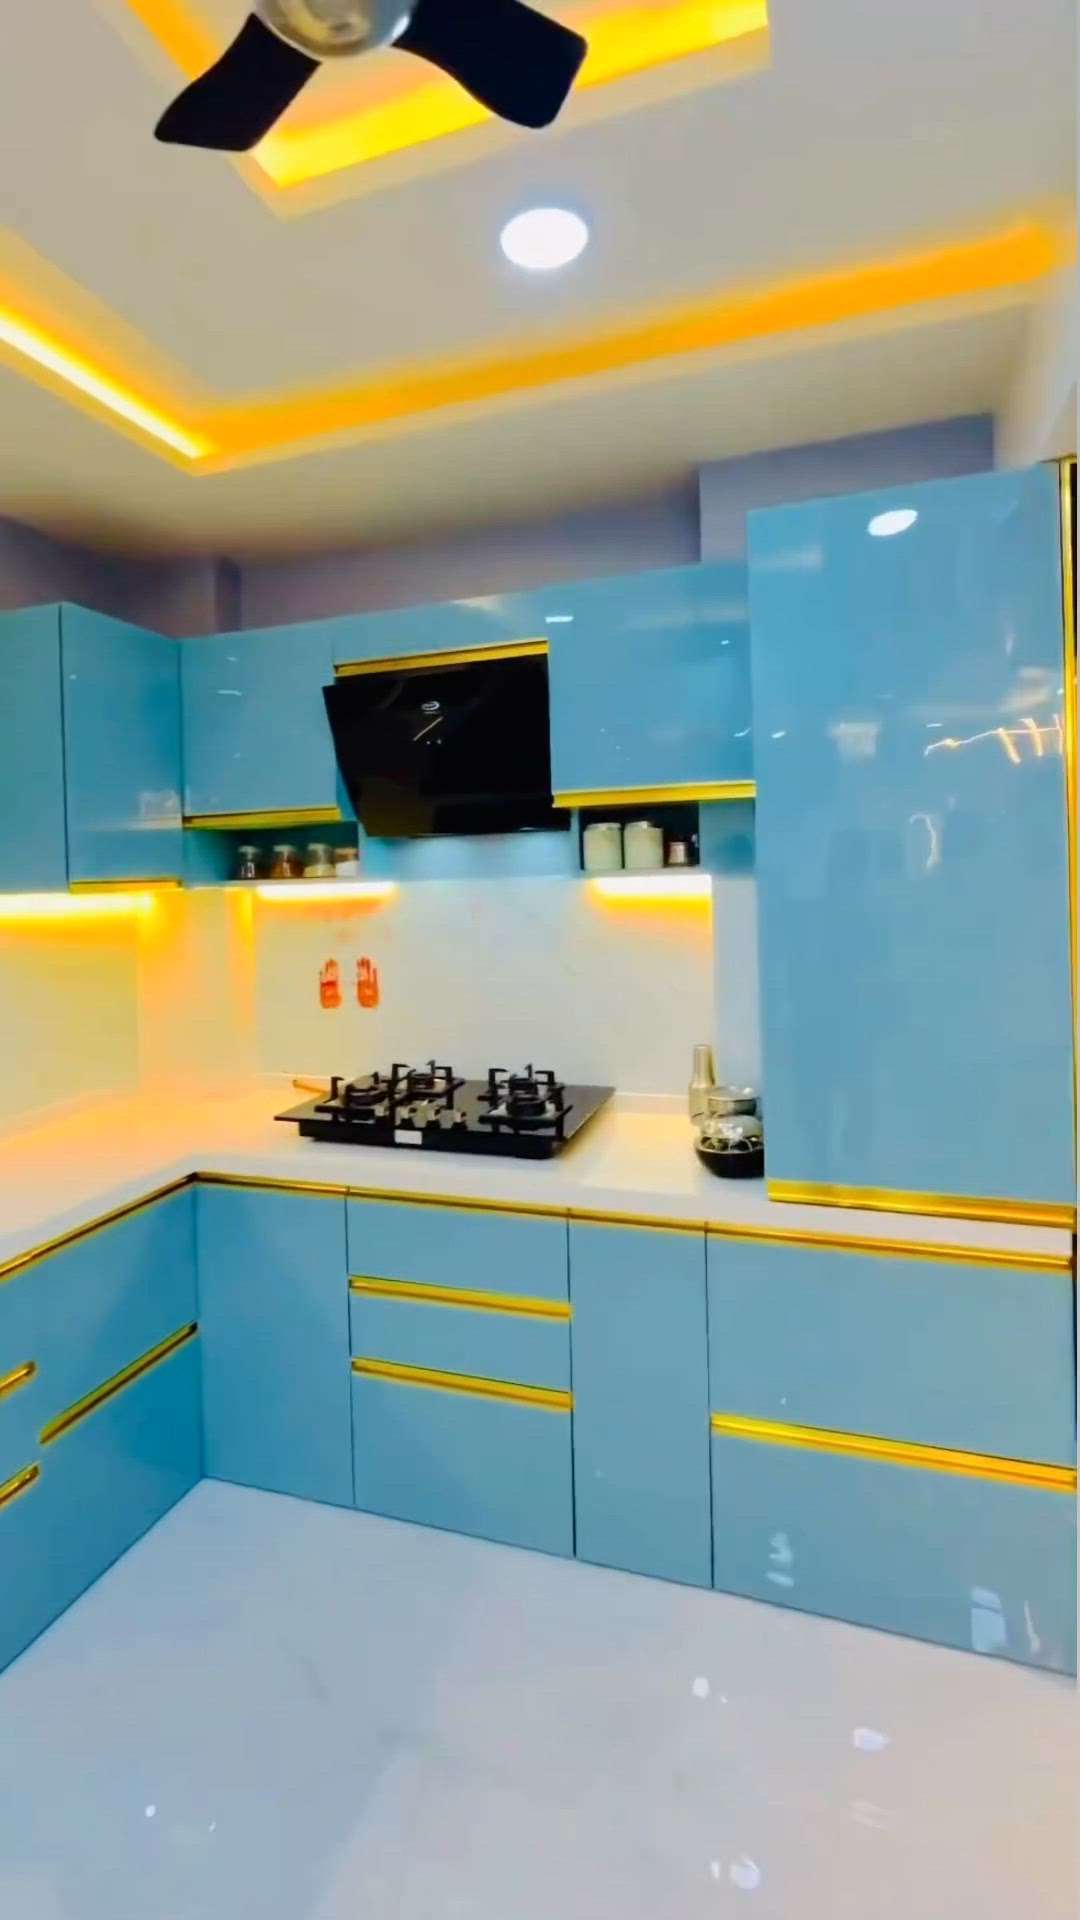 Full modular kitchen #KitchenIdeas